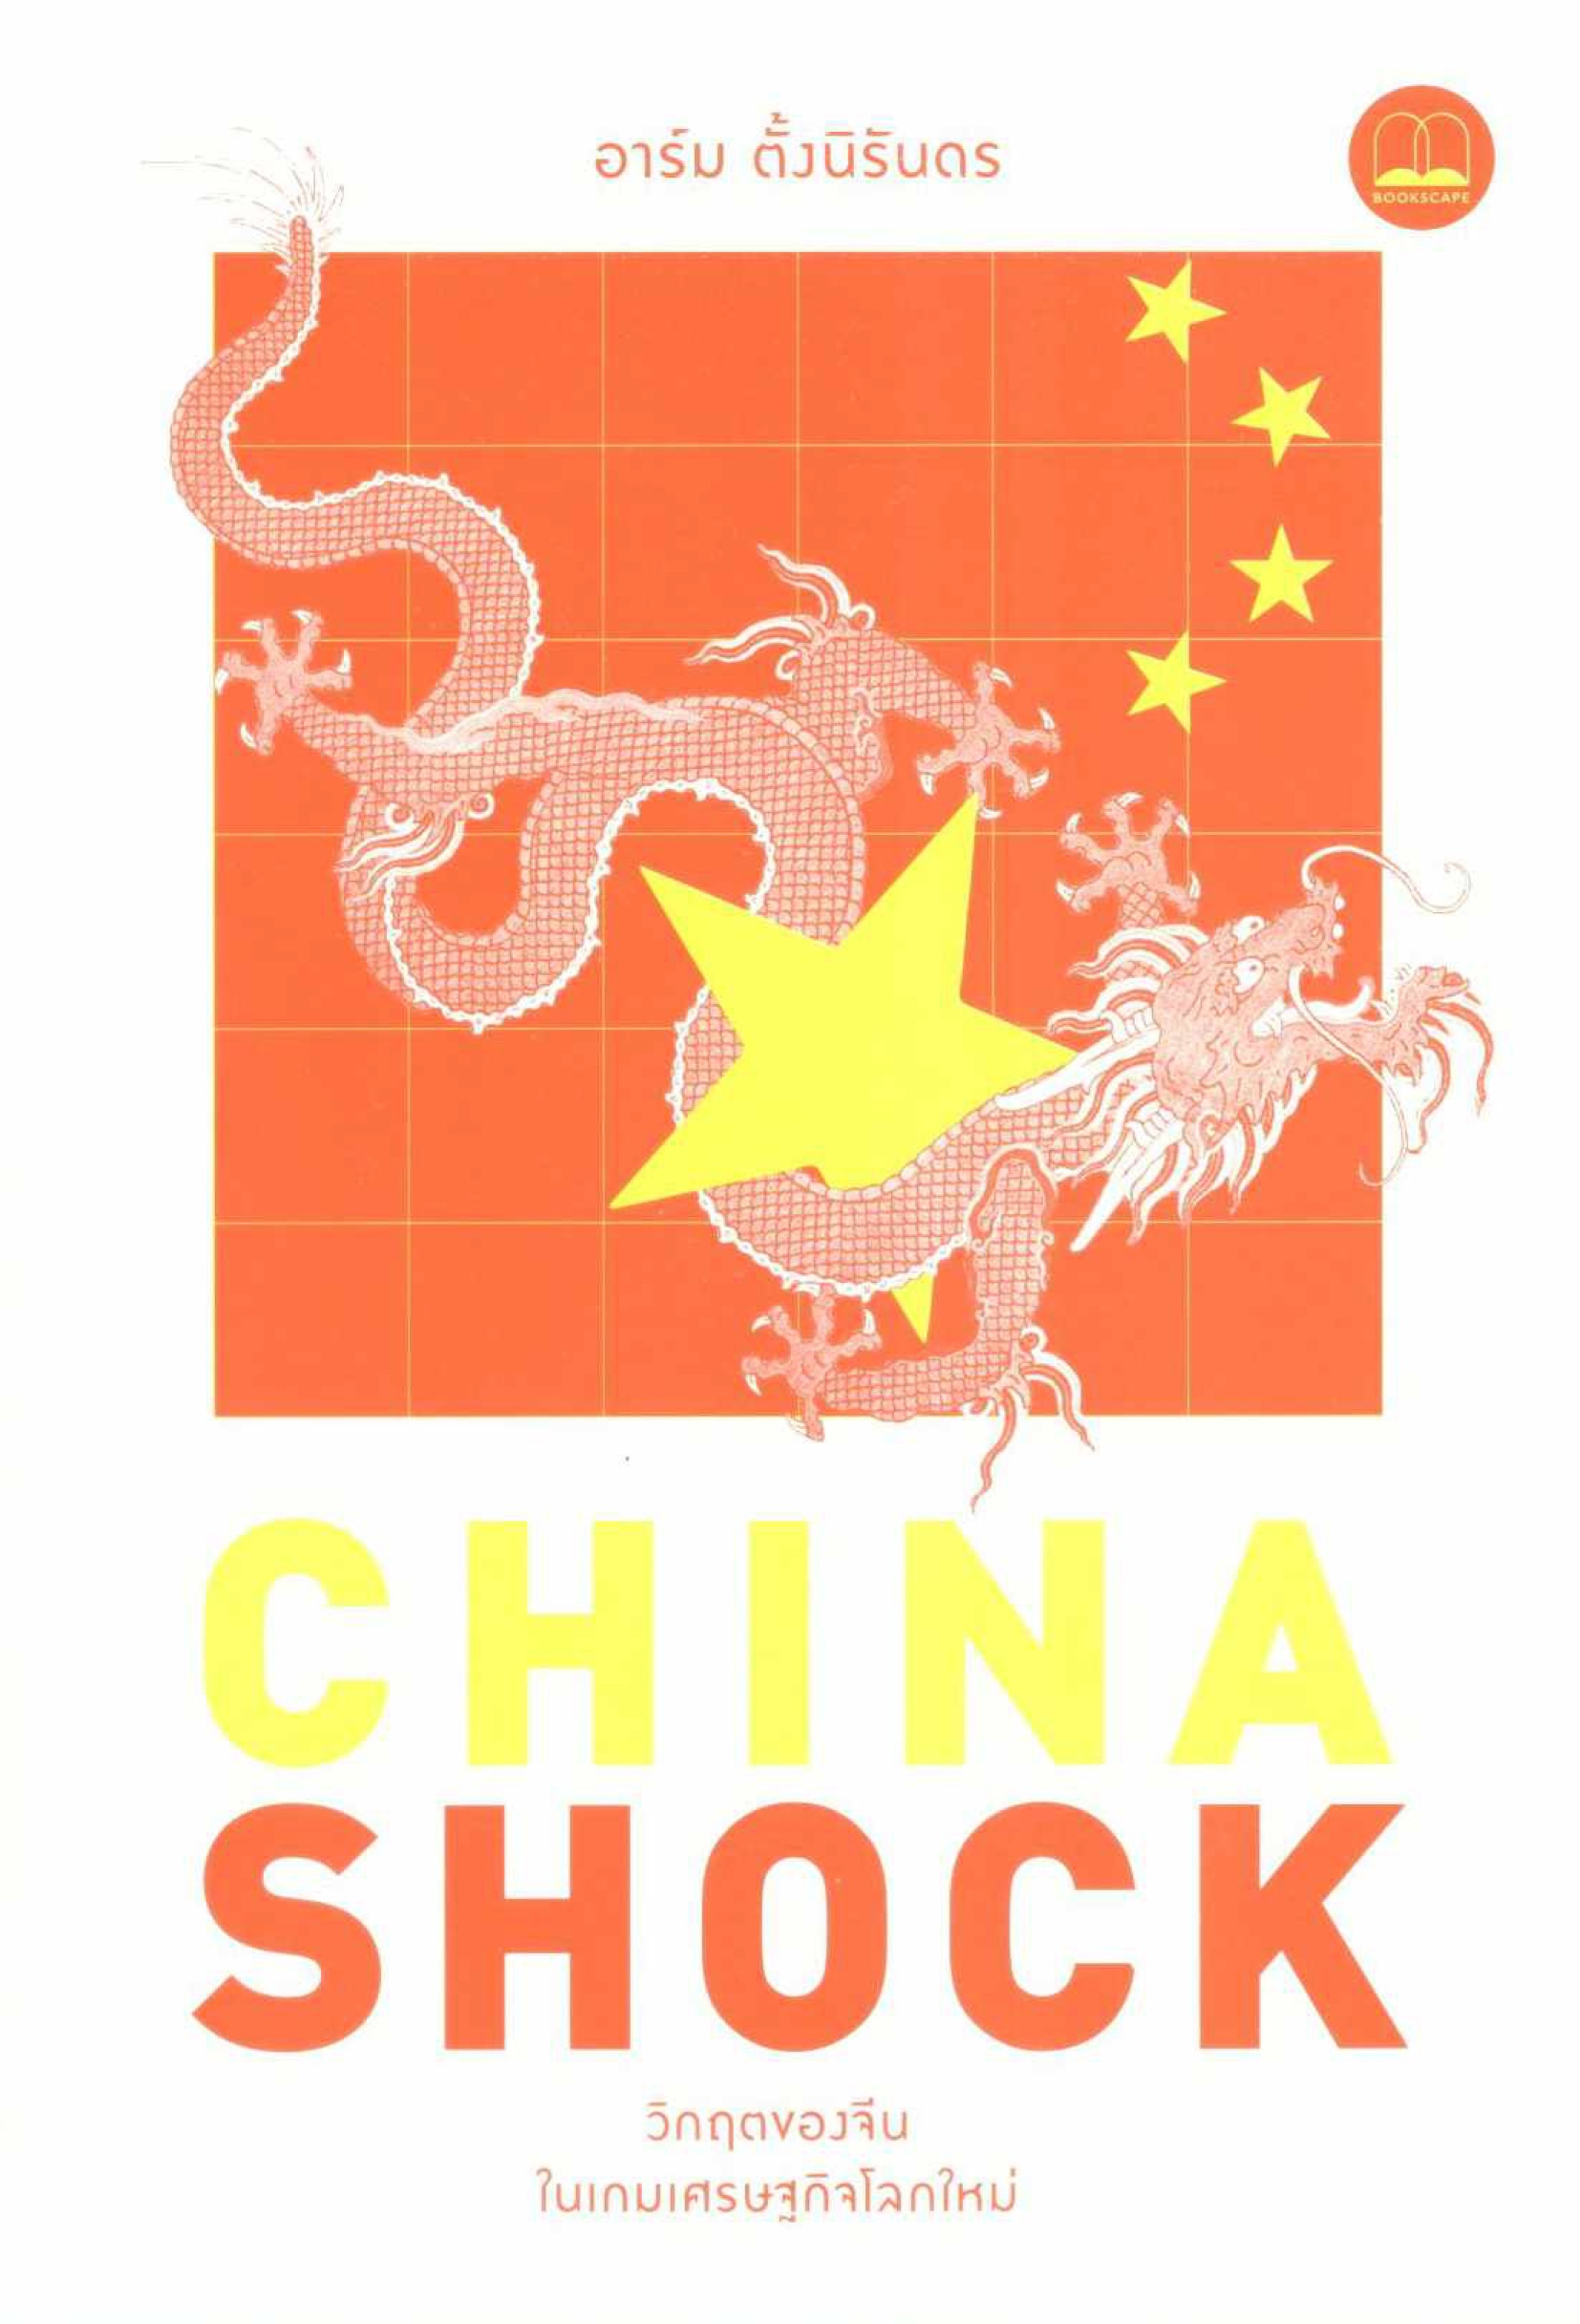 China shock